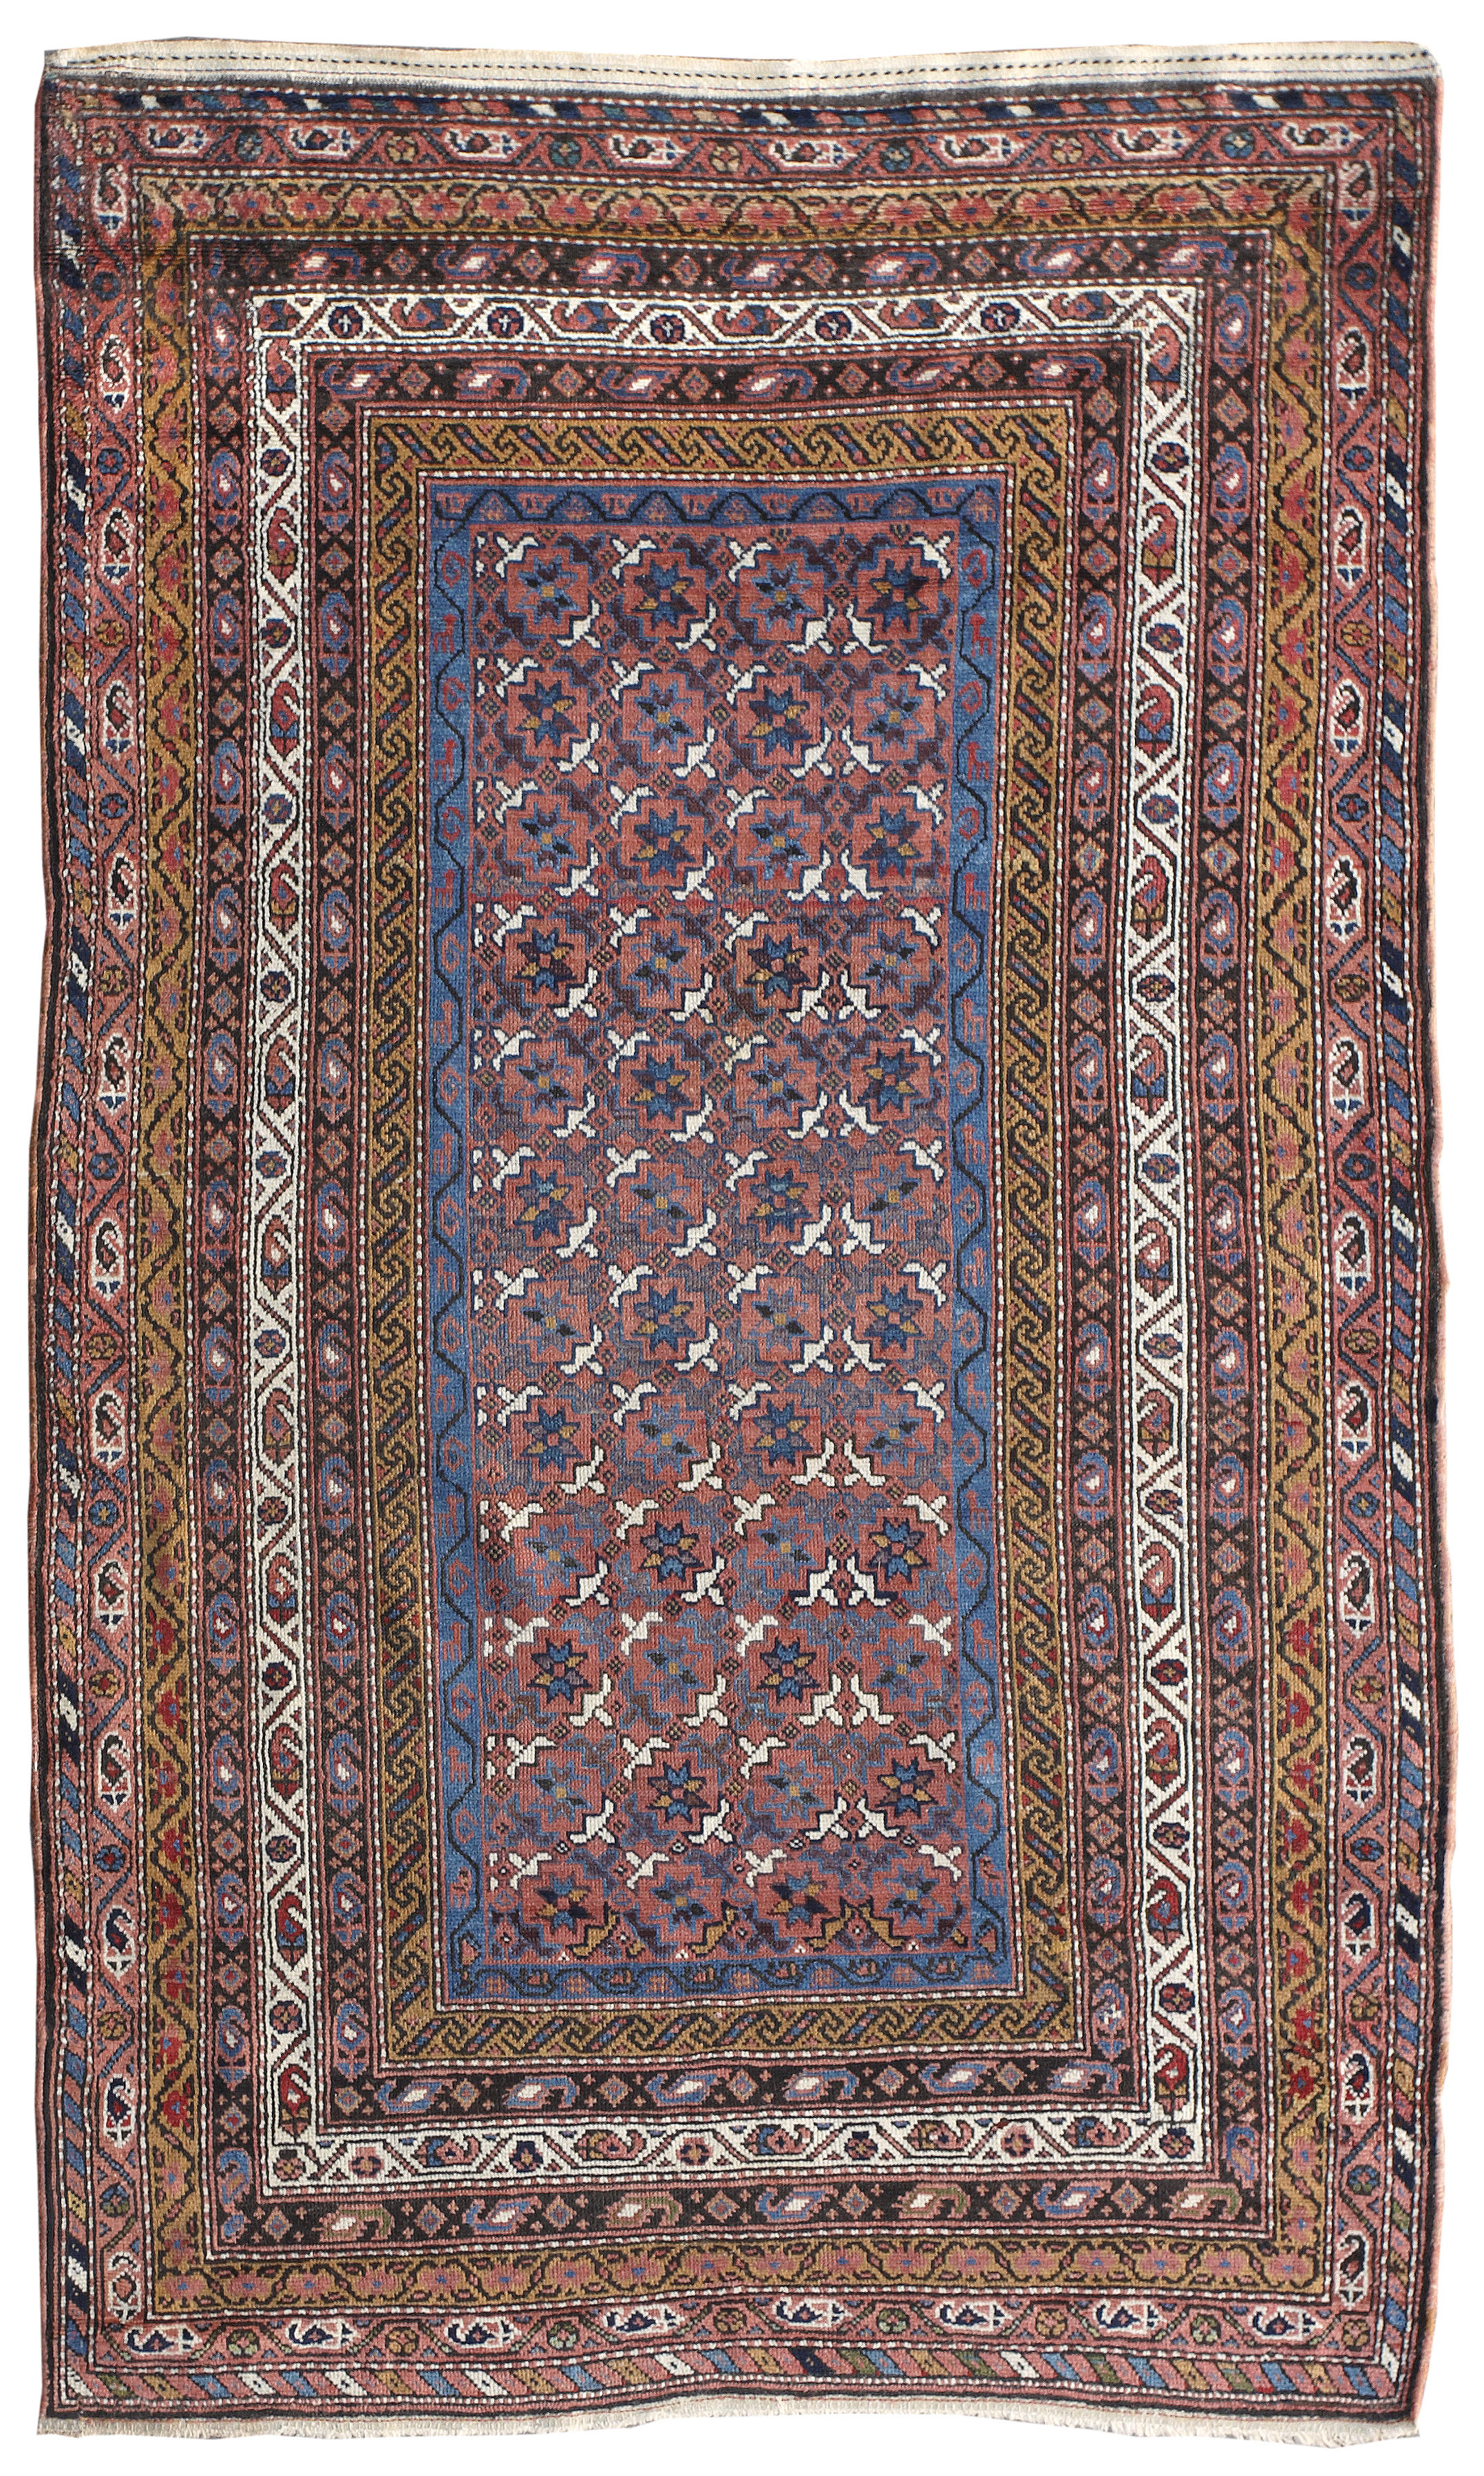 A Kurdish rug size approximately